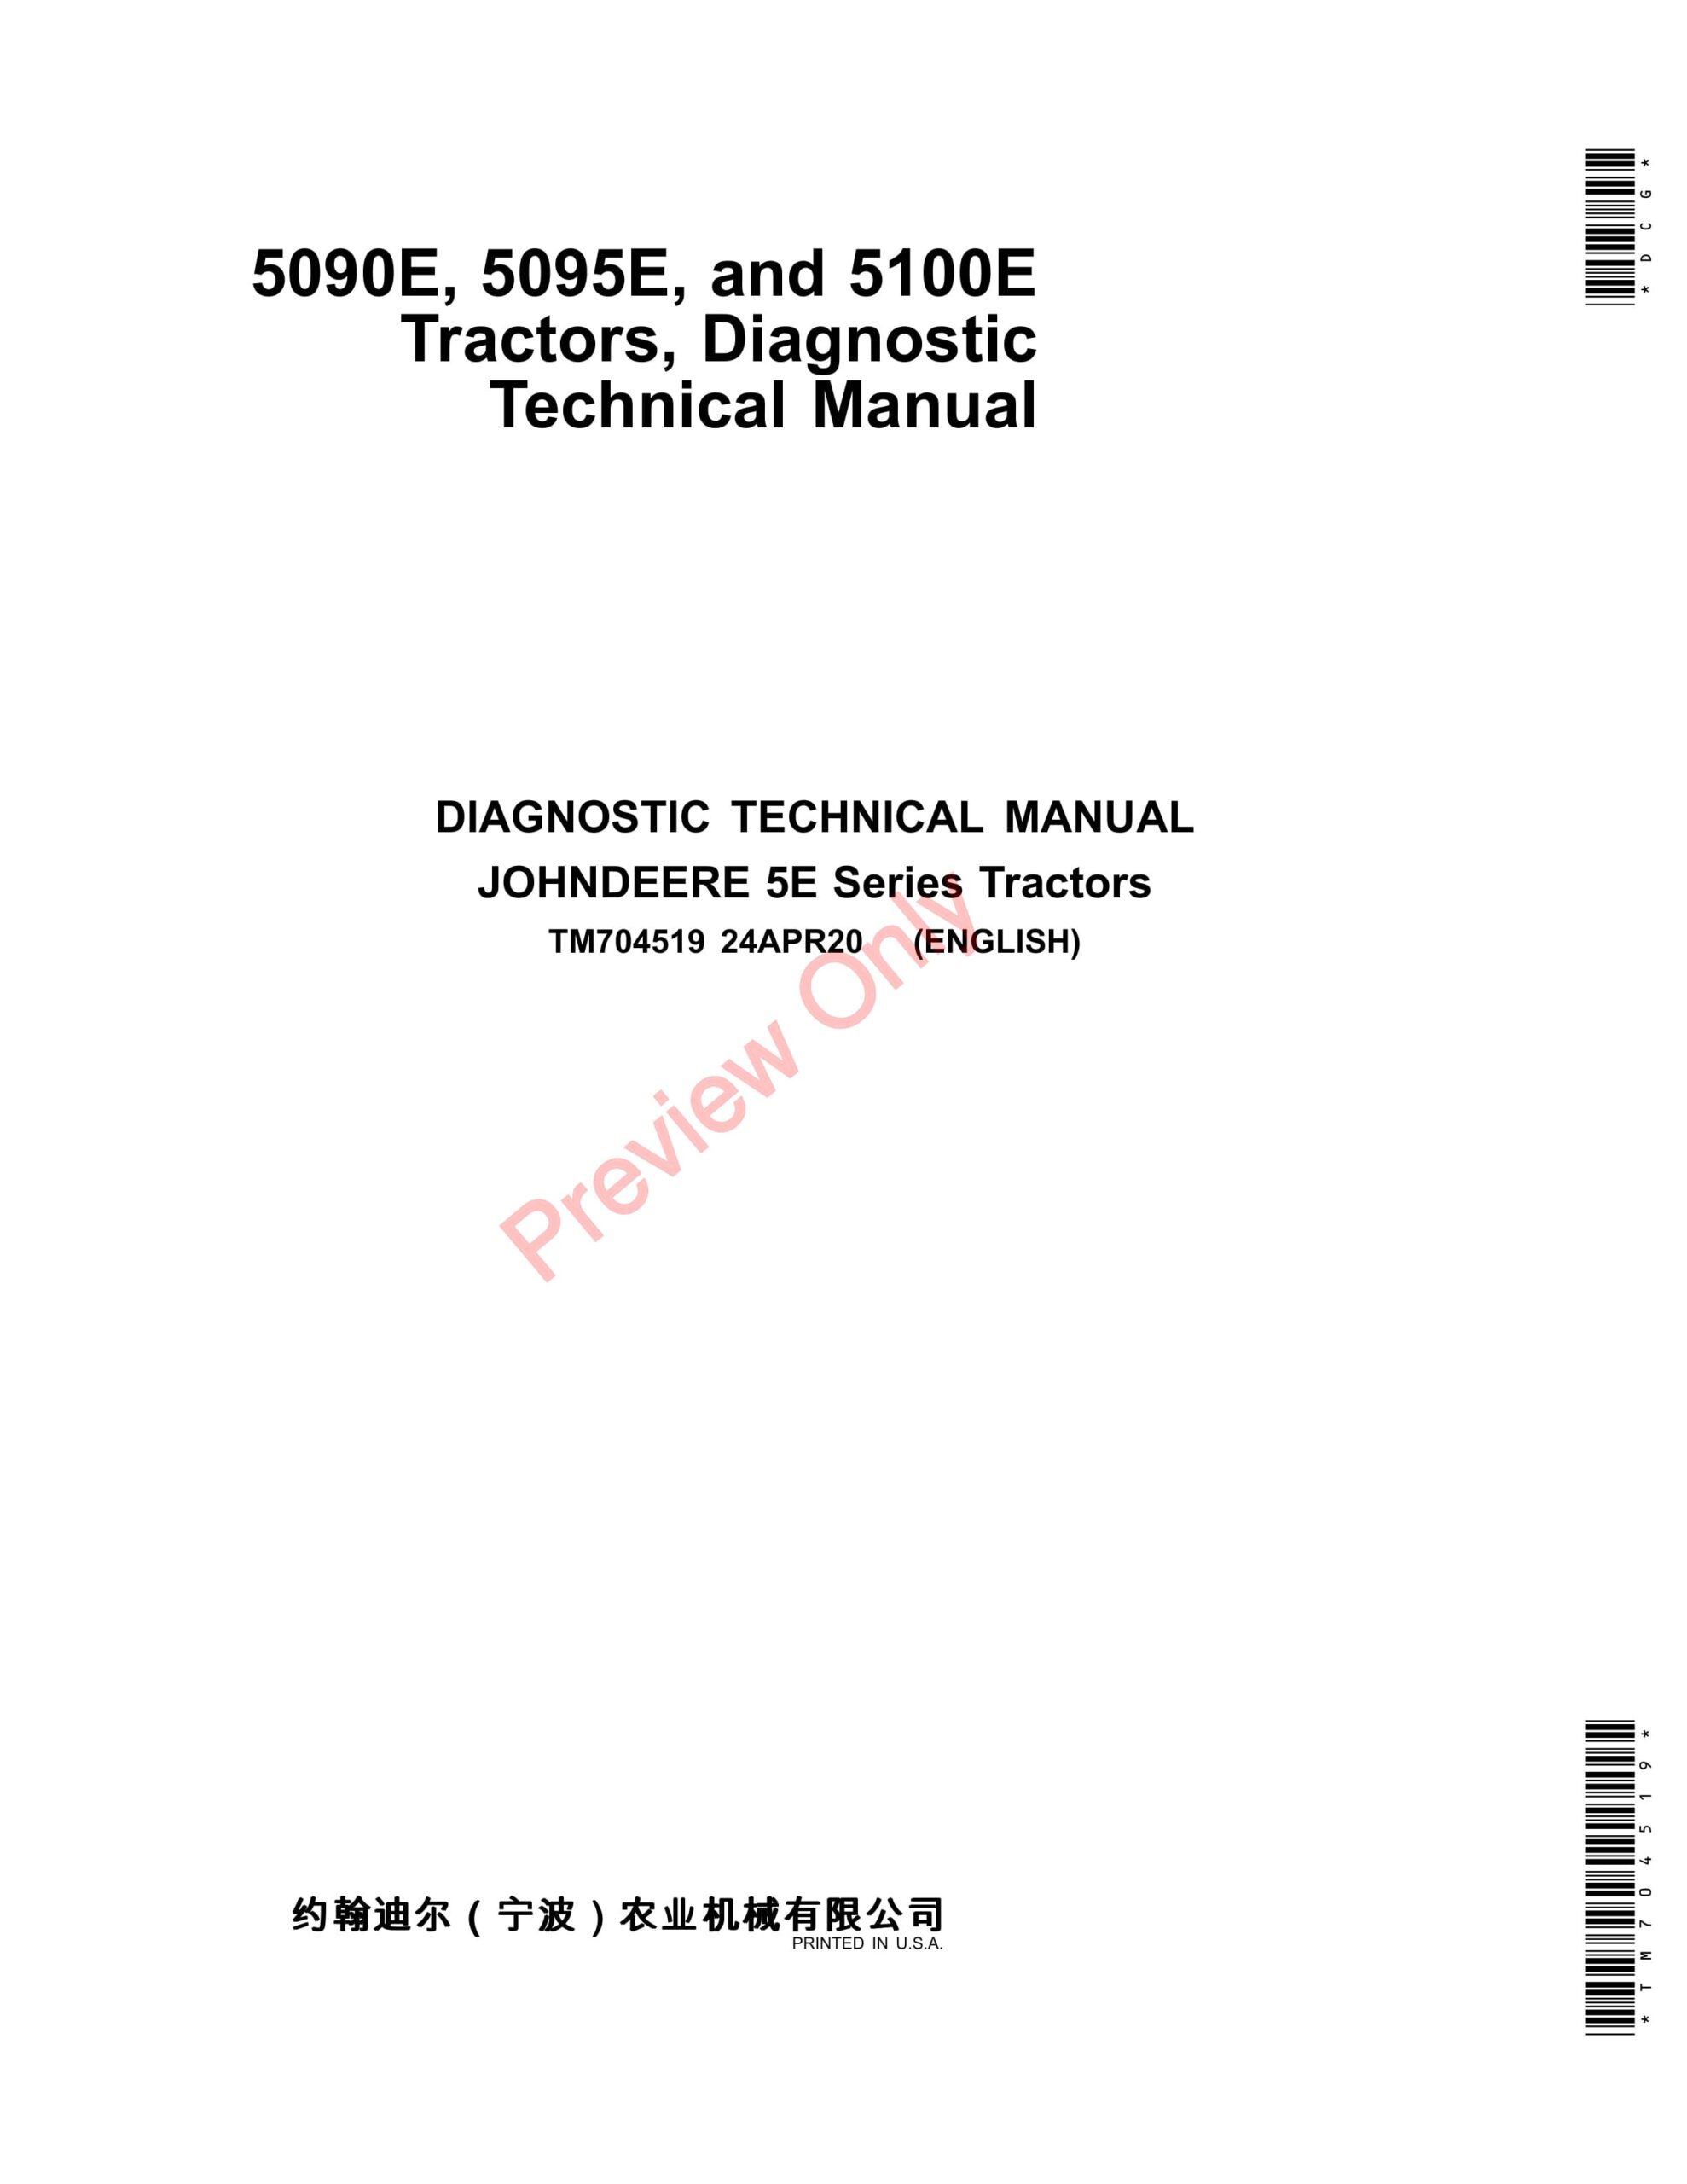 John Deere 5090E, 5095E, and 5100E Tractors (MY2020-) Diagnostic Technical Manual TM704519 24APR20-1